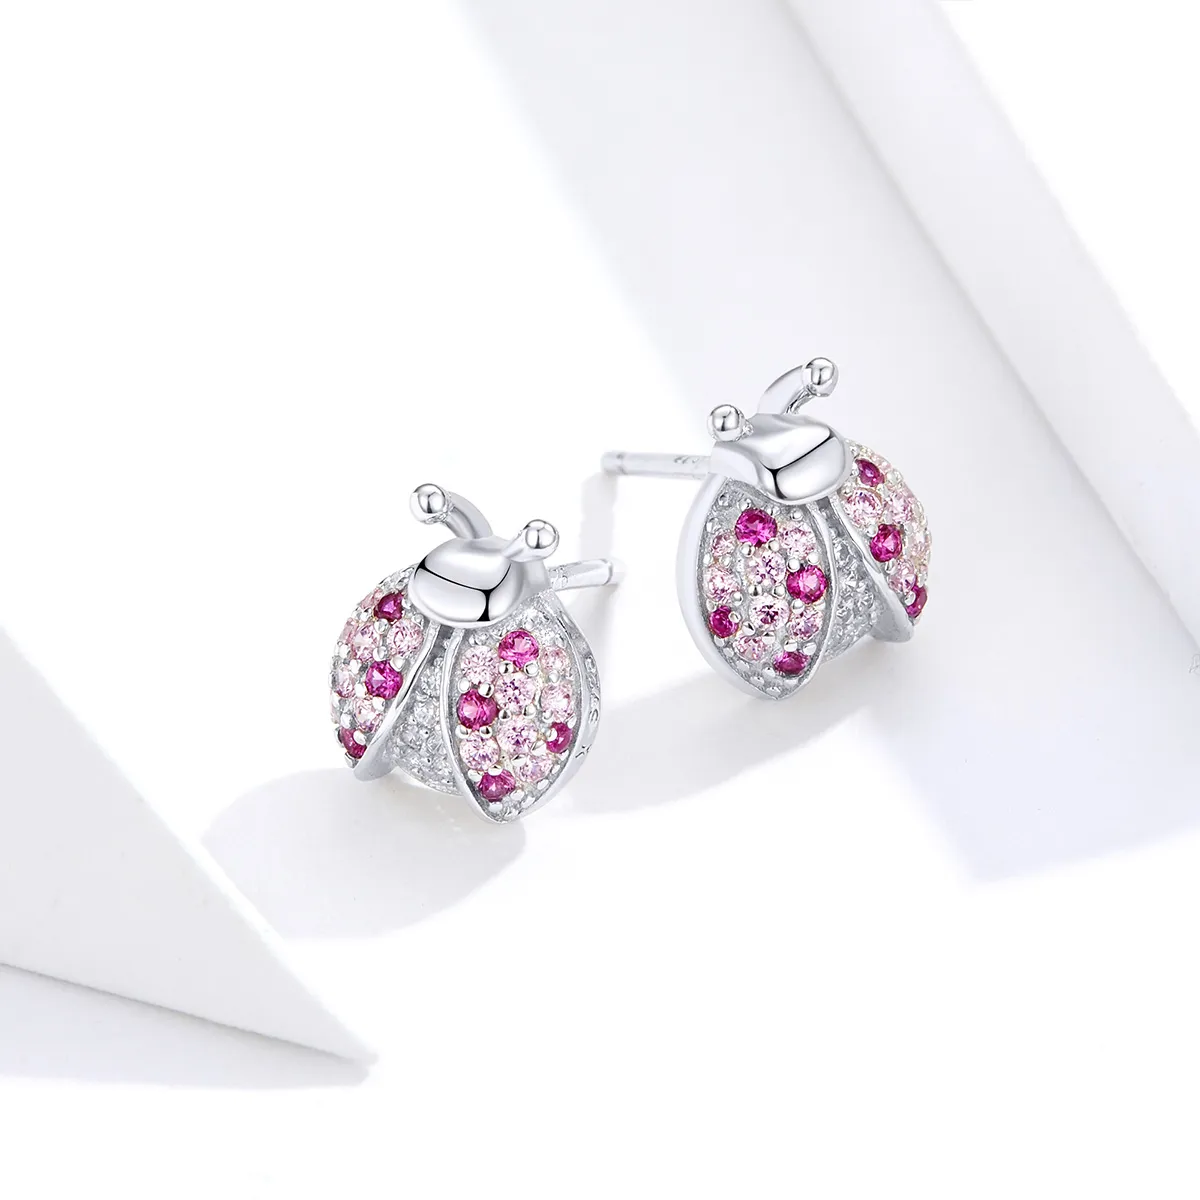 Pandora Style Silver Ladybug Stud Earrings - SCE715